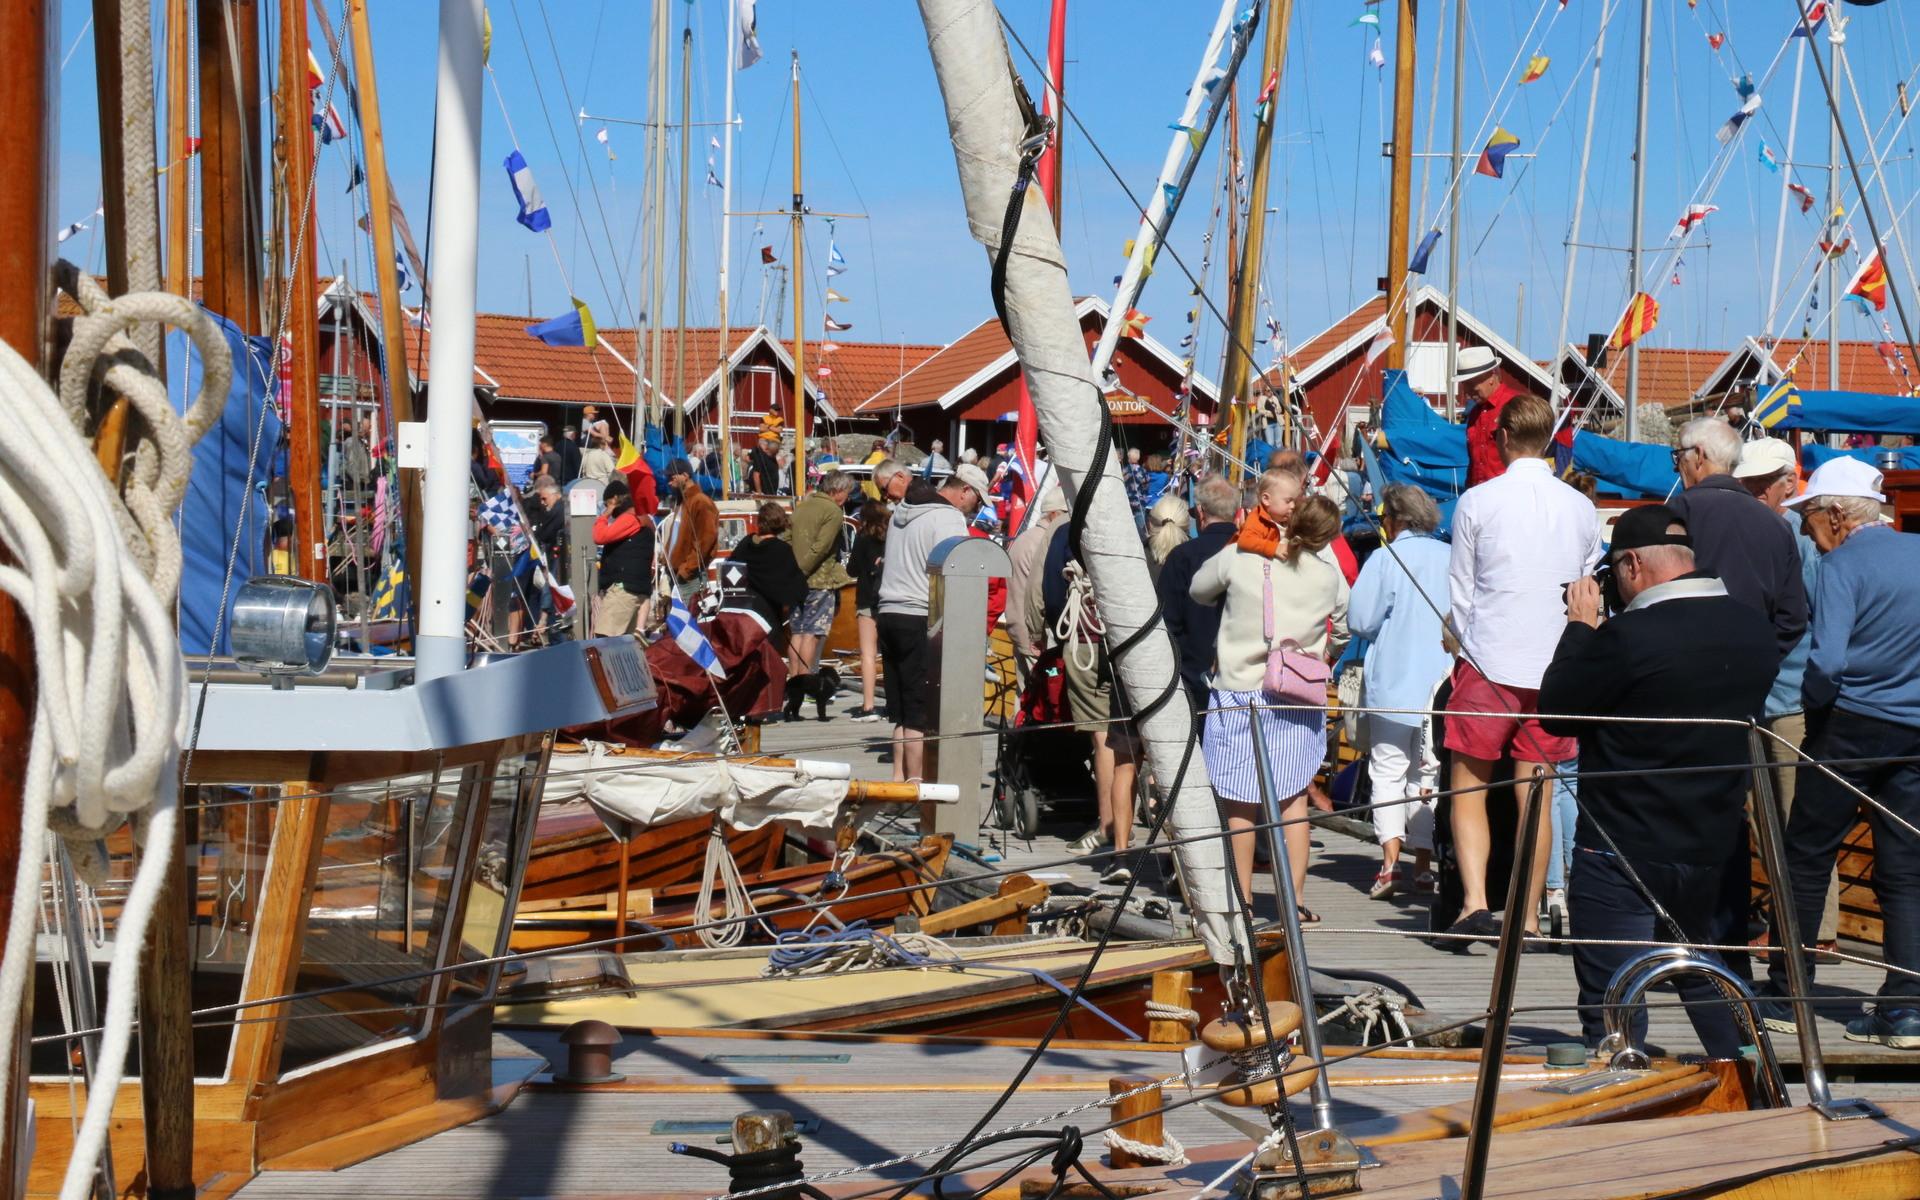 Sol, vatten och vackra båtar, årets upplaga av träbåtsfestivalen blev mycket lyckad. 